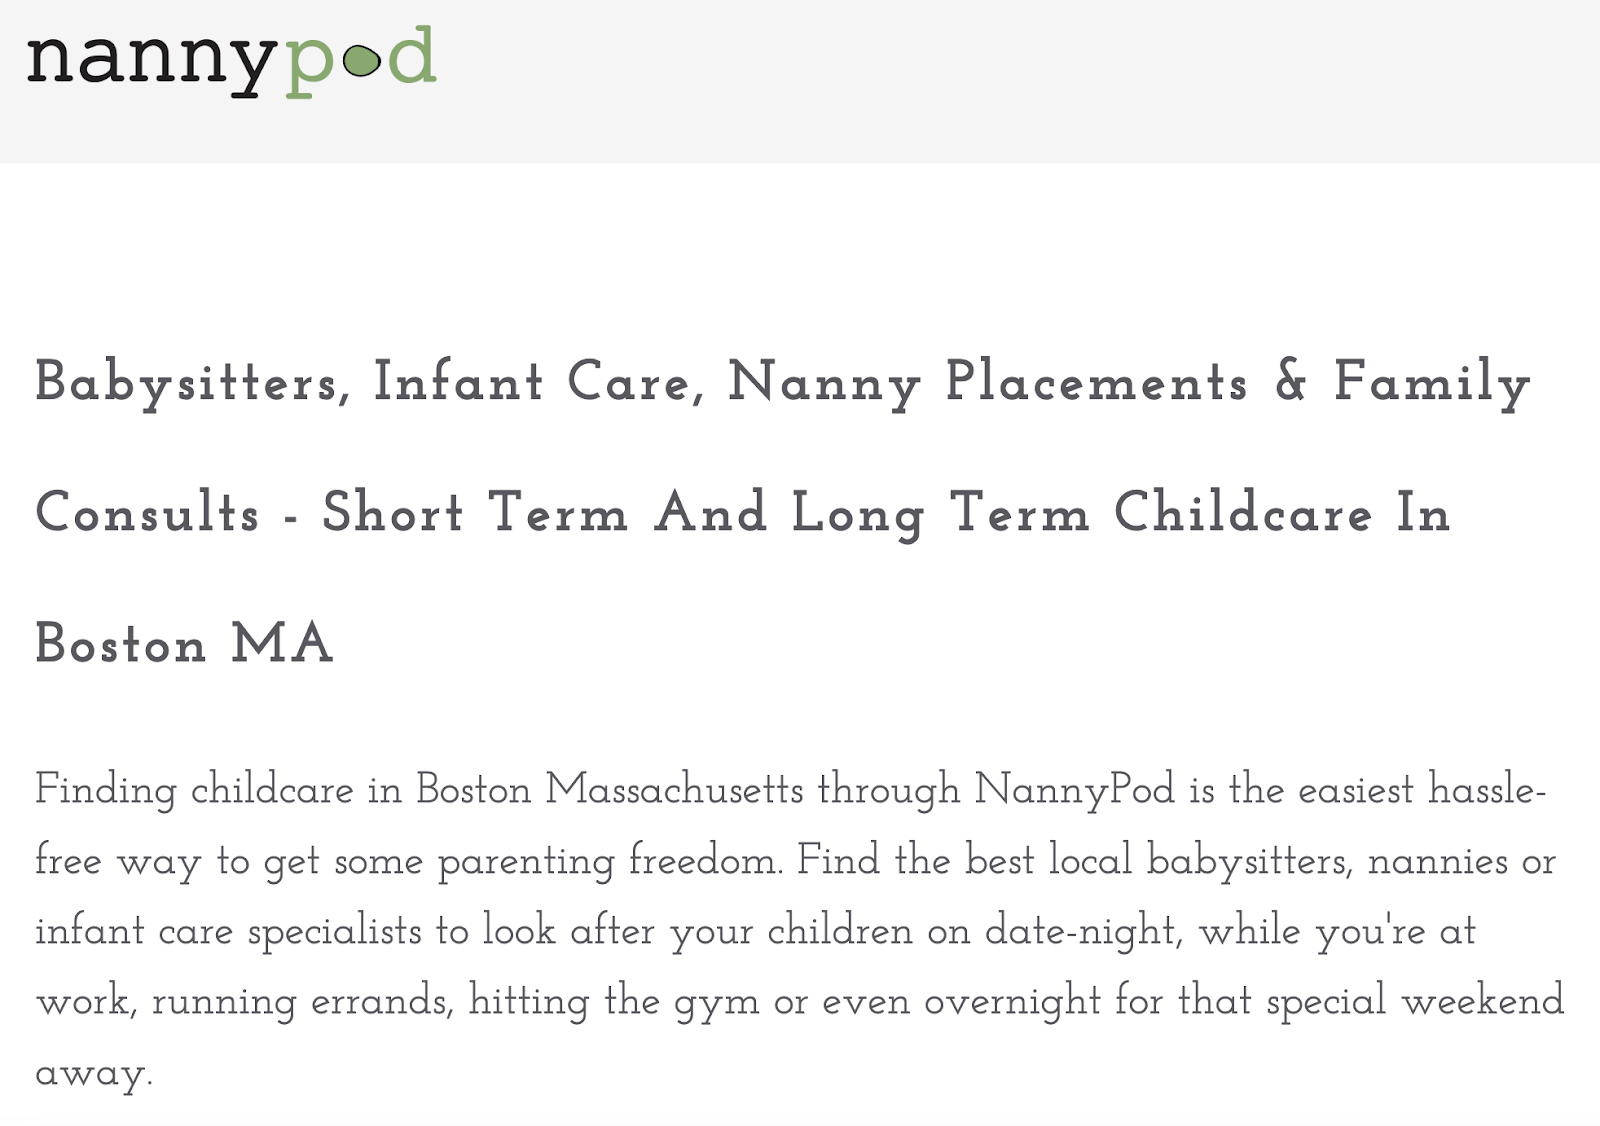 NannyPod's location page